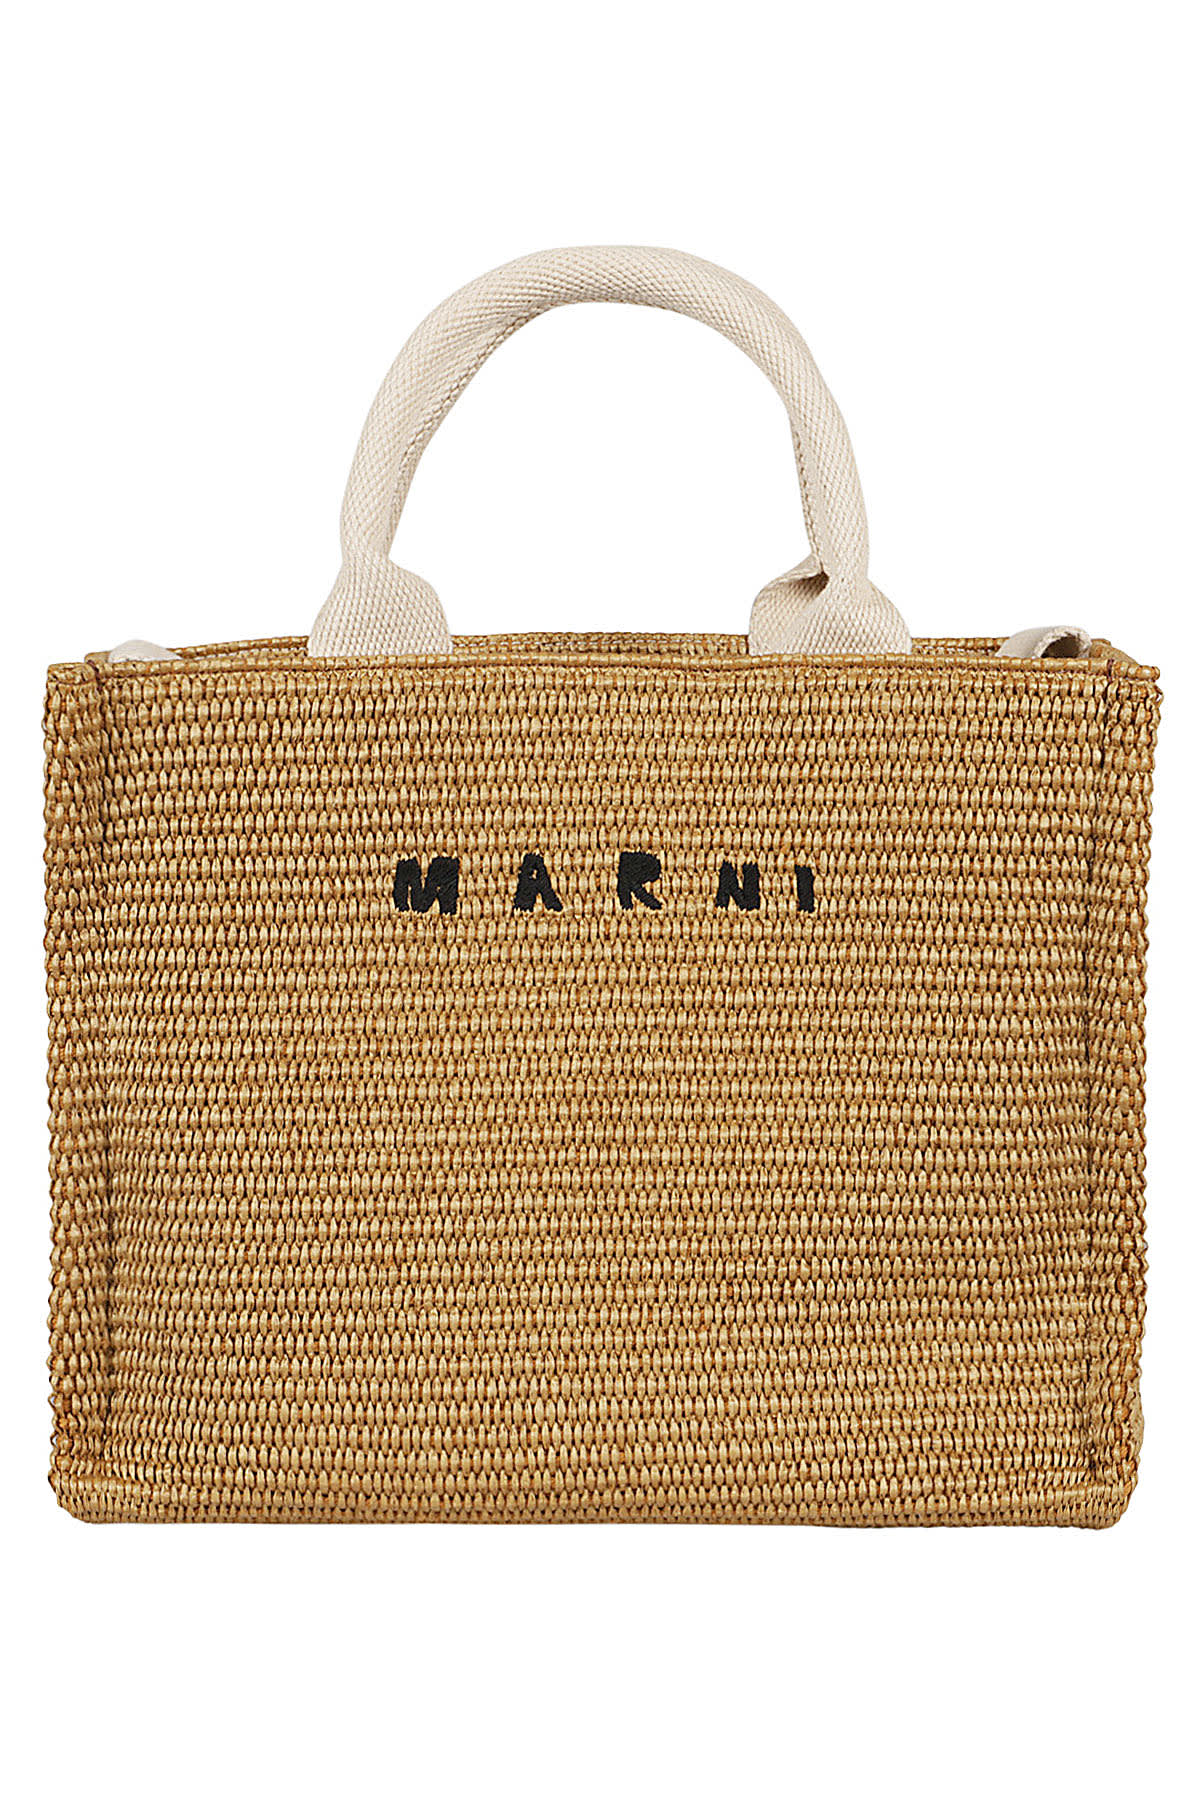 Marni Small Basket In Corda